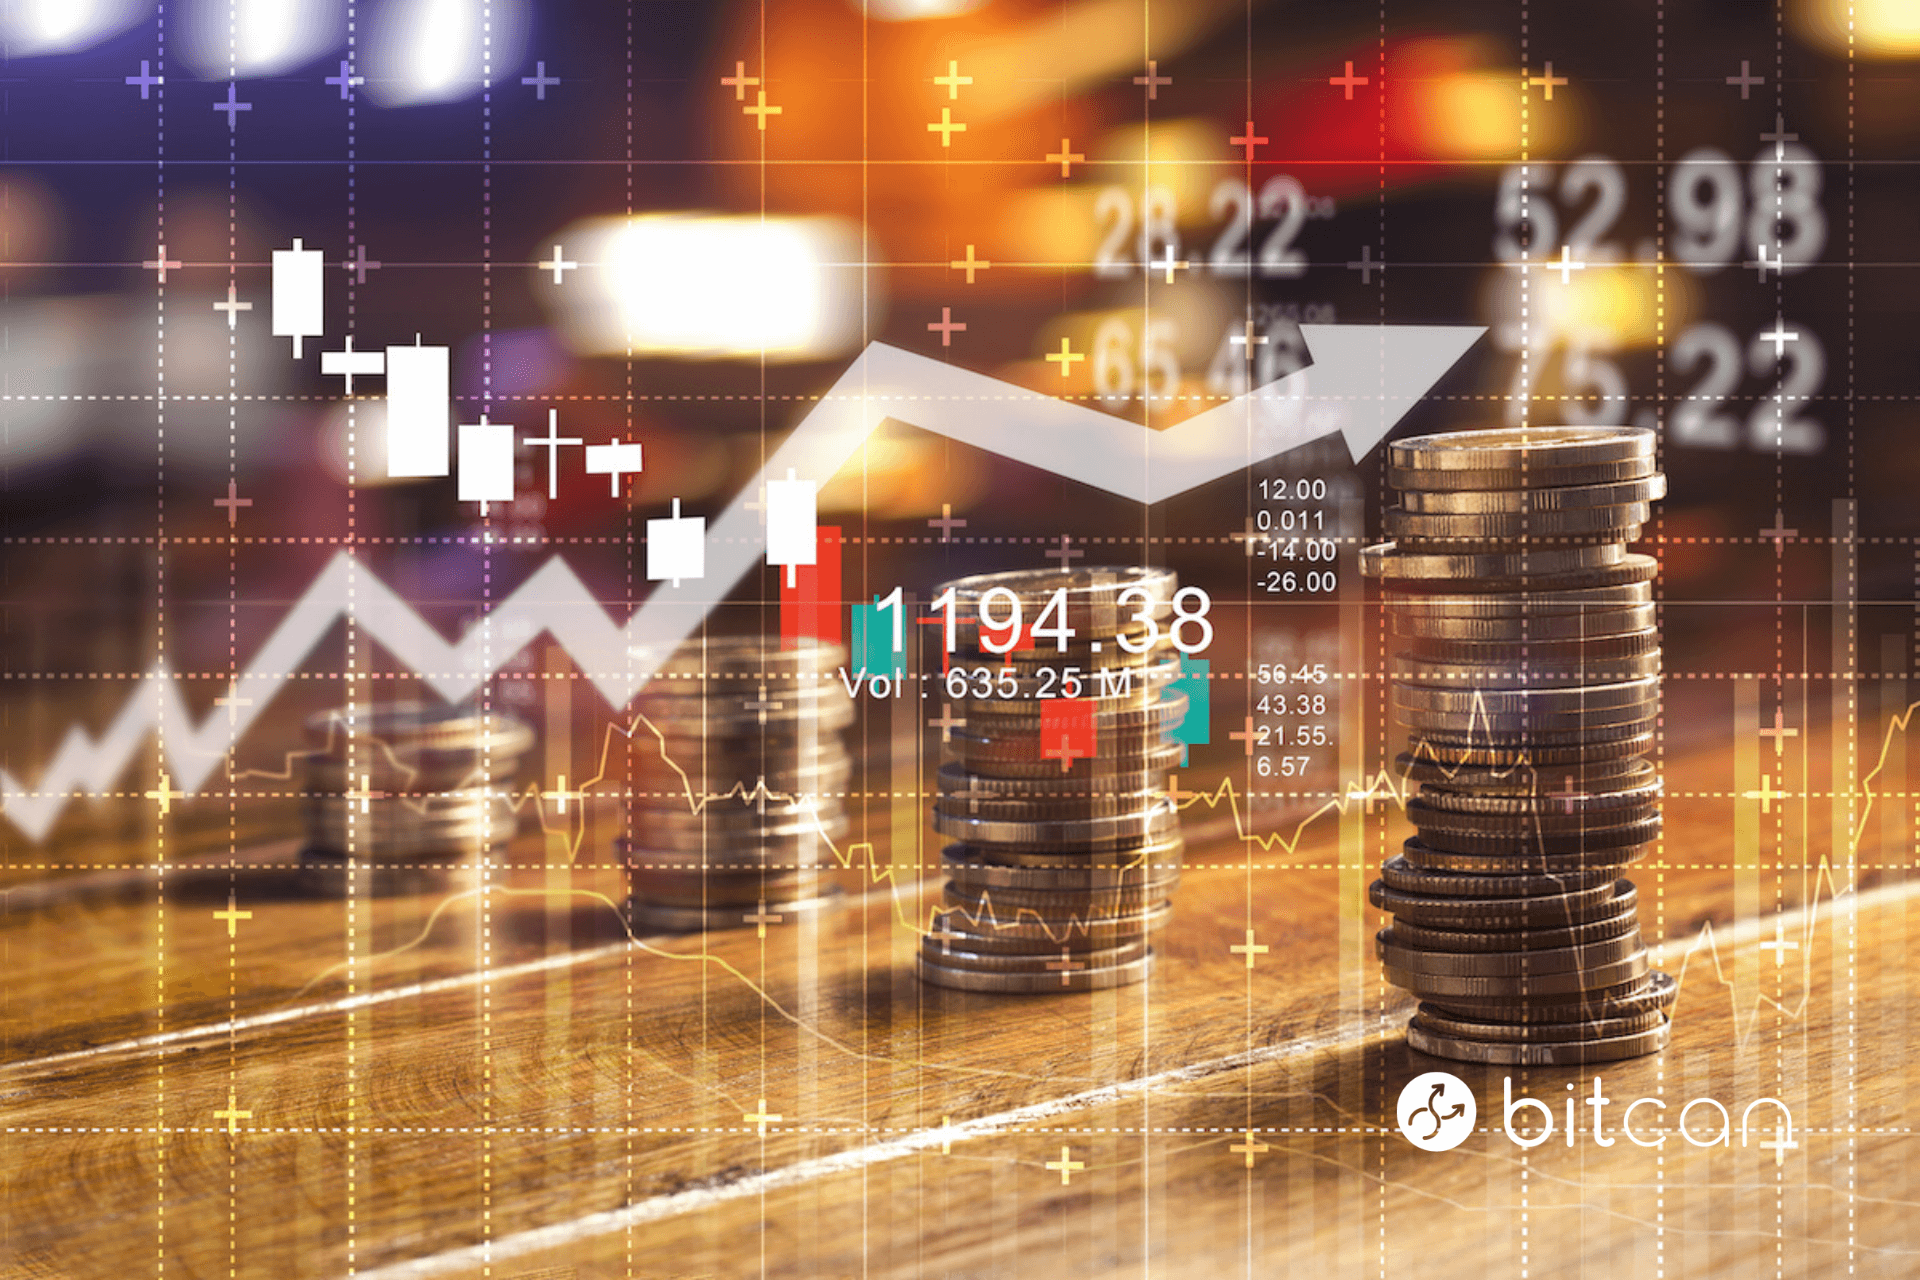 Cena bitcoina prognozowana nawet na milion złotych. Co wpływa na ciągły wzrost kryptowaluty?